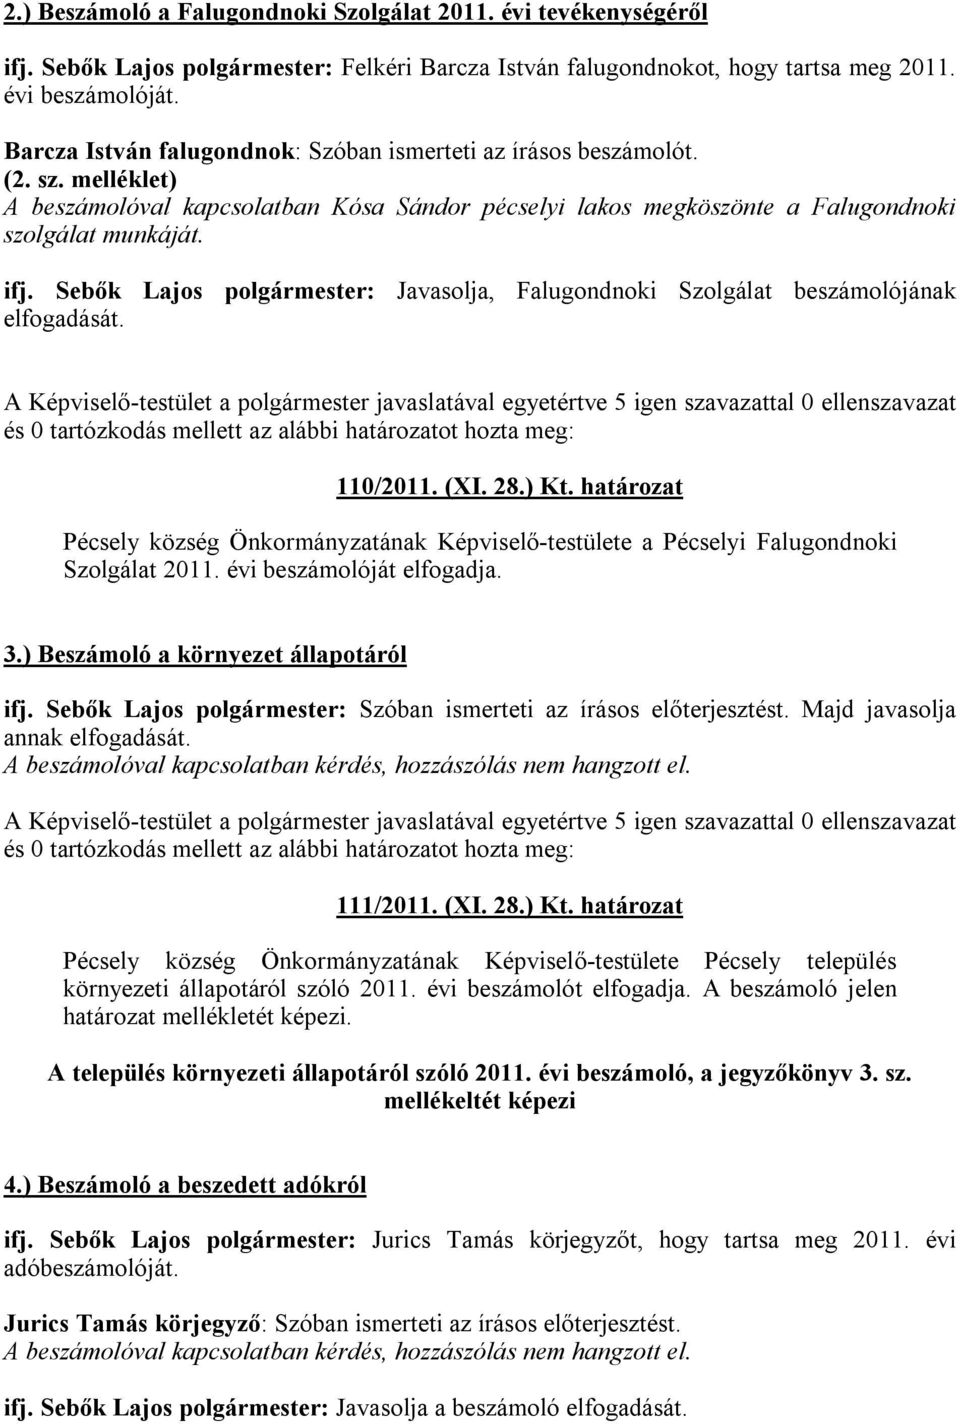 Sebők Lajos polgármester: Javasolja, Falugondnoki Szolgálat beszámolójának elfogadását. A Képviselő-testület a polgármester javaslatával egyetértve 5 igen szavazattal 0 ellenszavazat 110/2011. (XI.